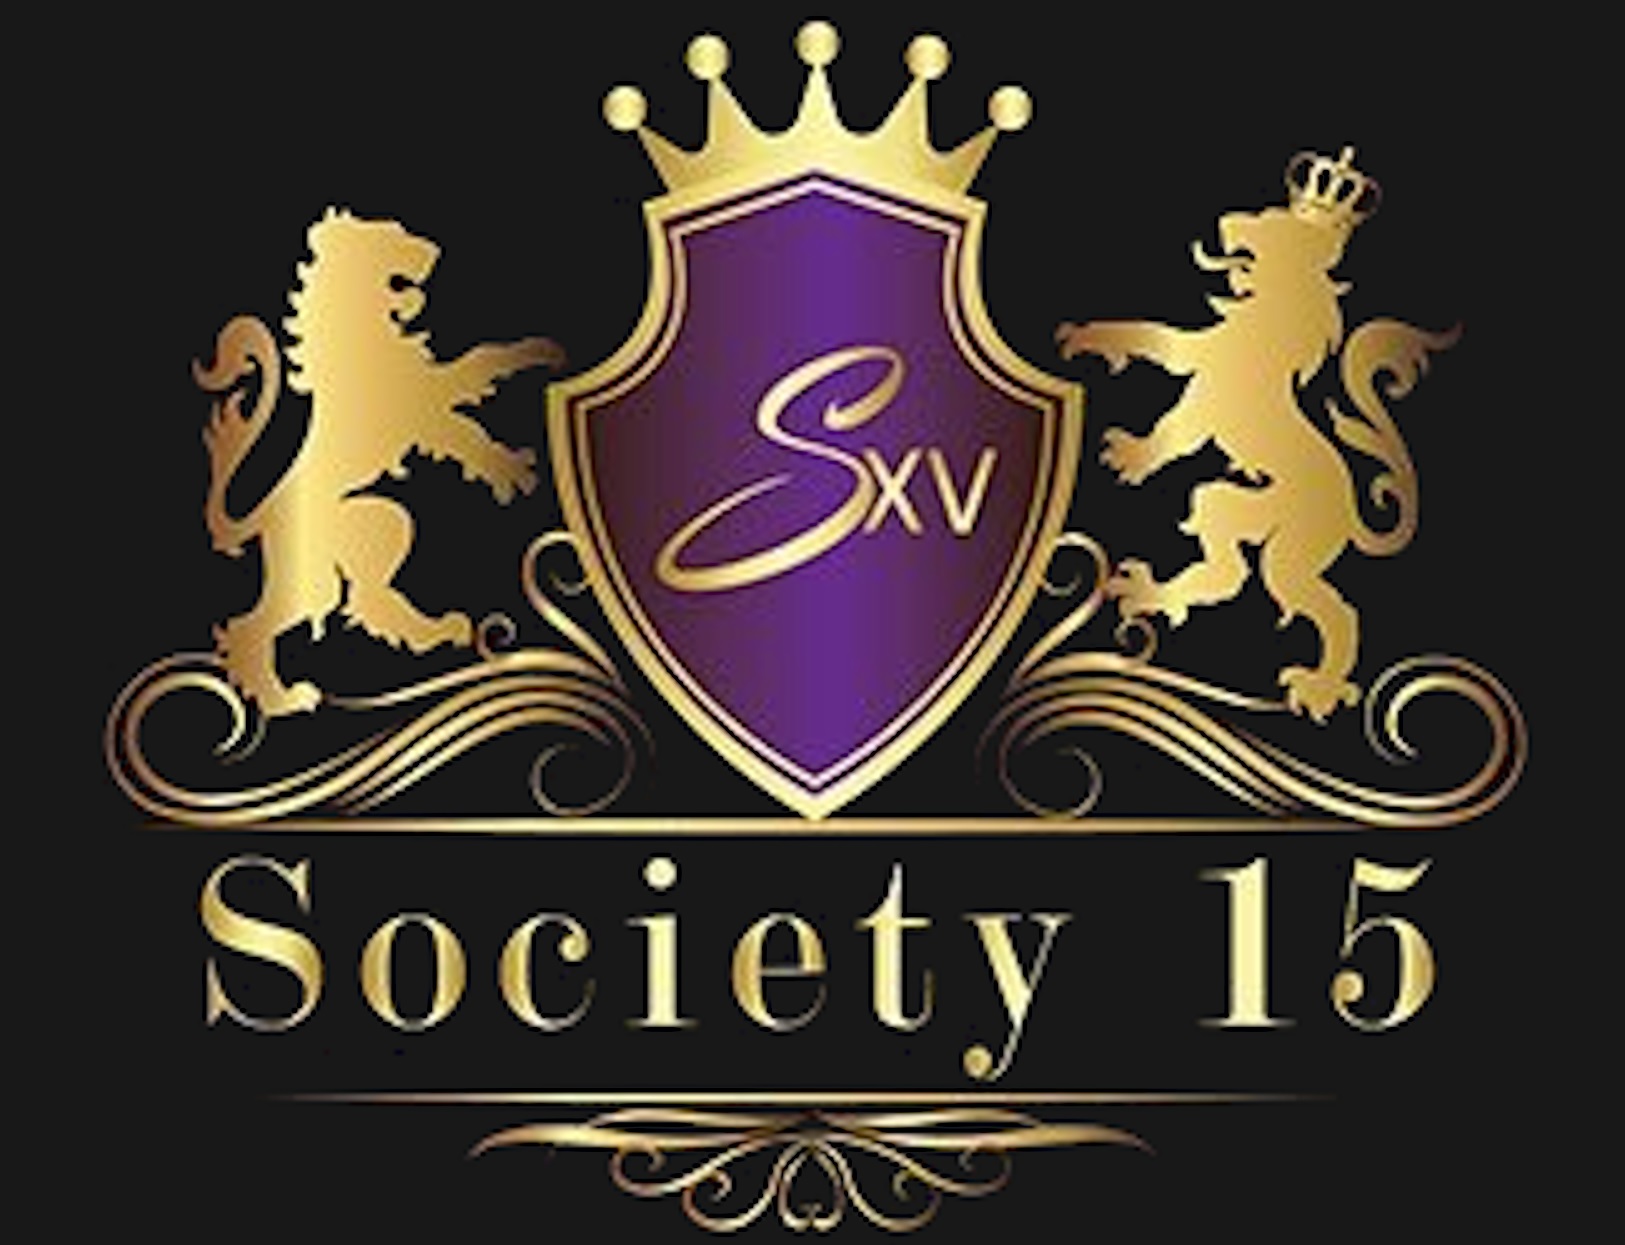 Society15